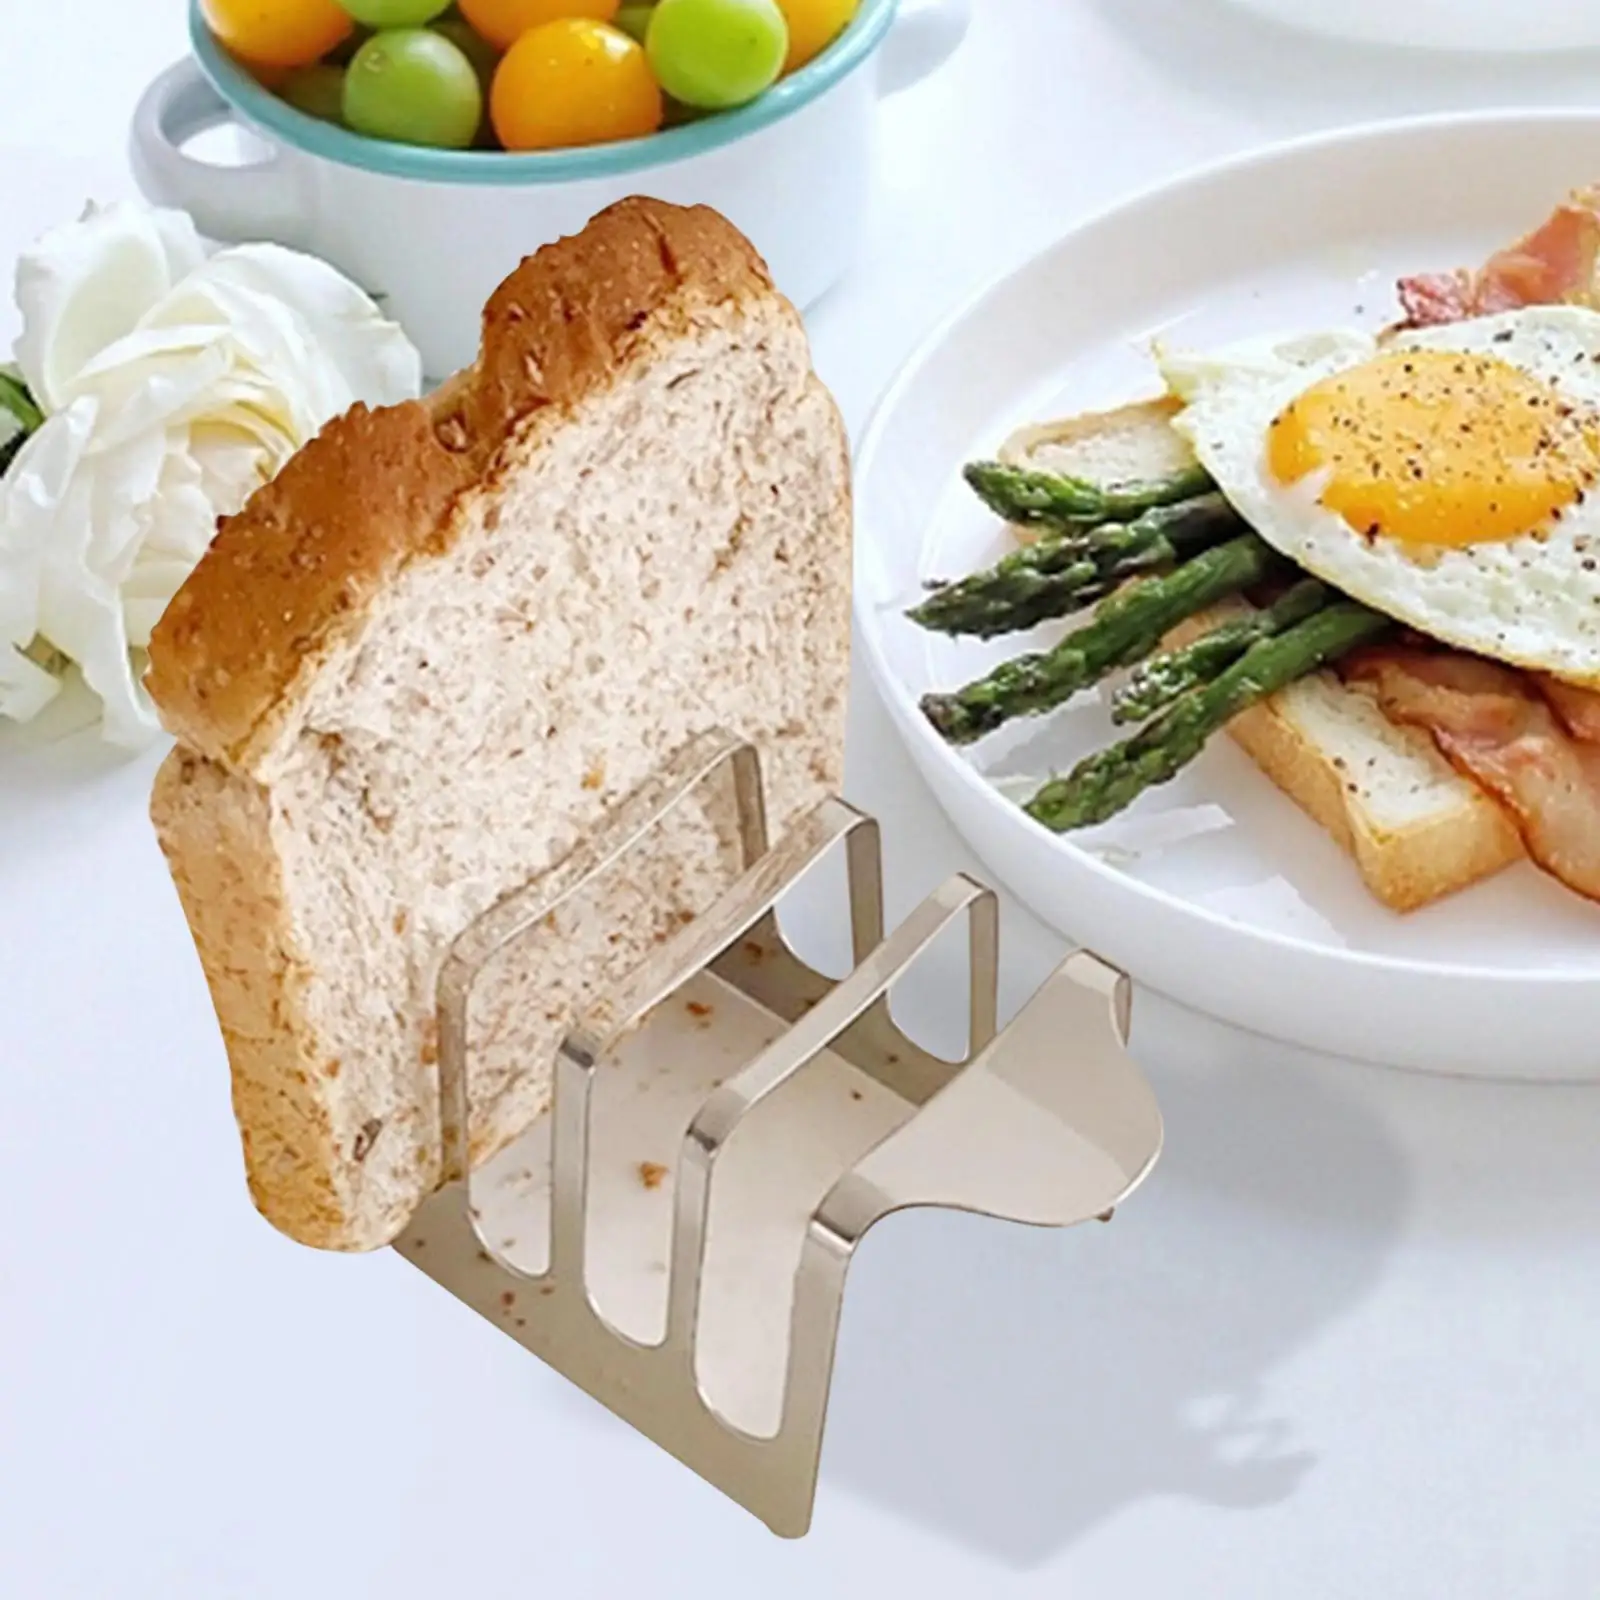 Toast Bread Rack Holder Utensil Household 4 Slice Slots Display Tool Organiser for Kitchen Hotel Pancake Restaurant Cooking